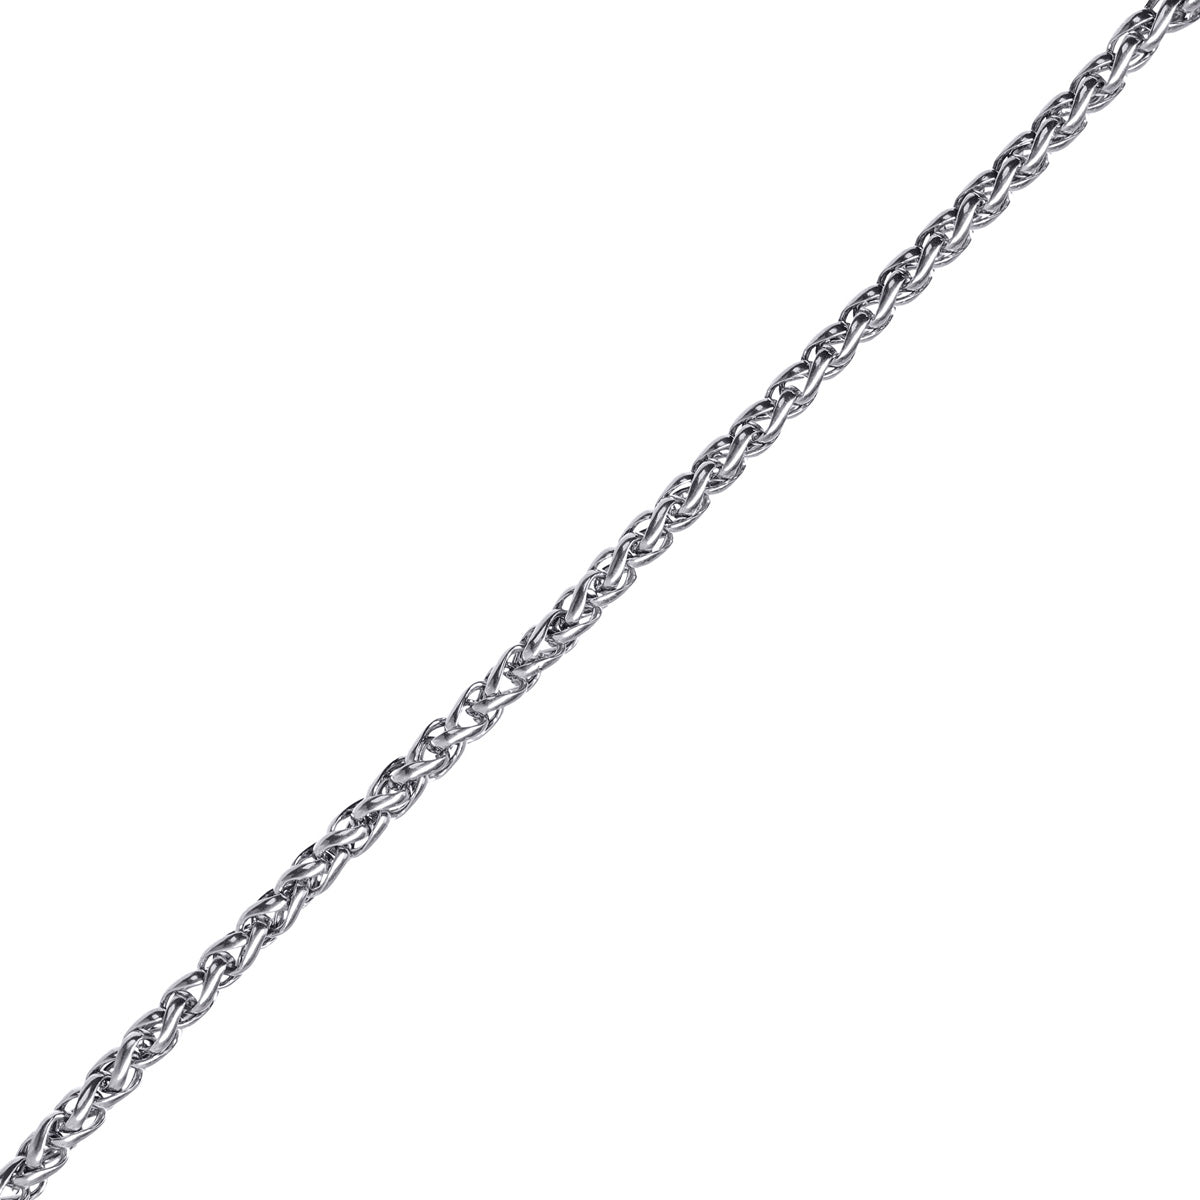 Round steel chain 3mm necklace 55cm